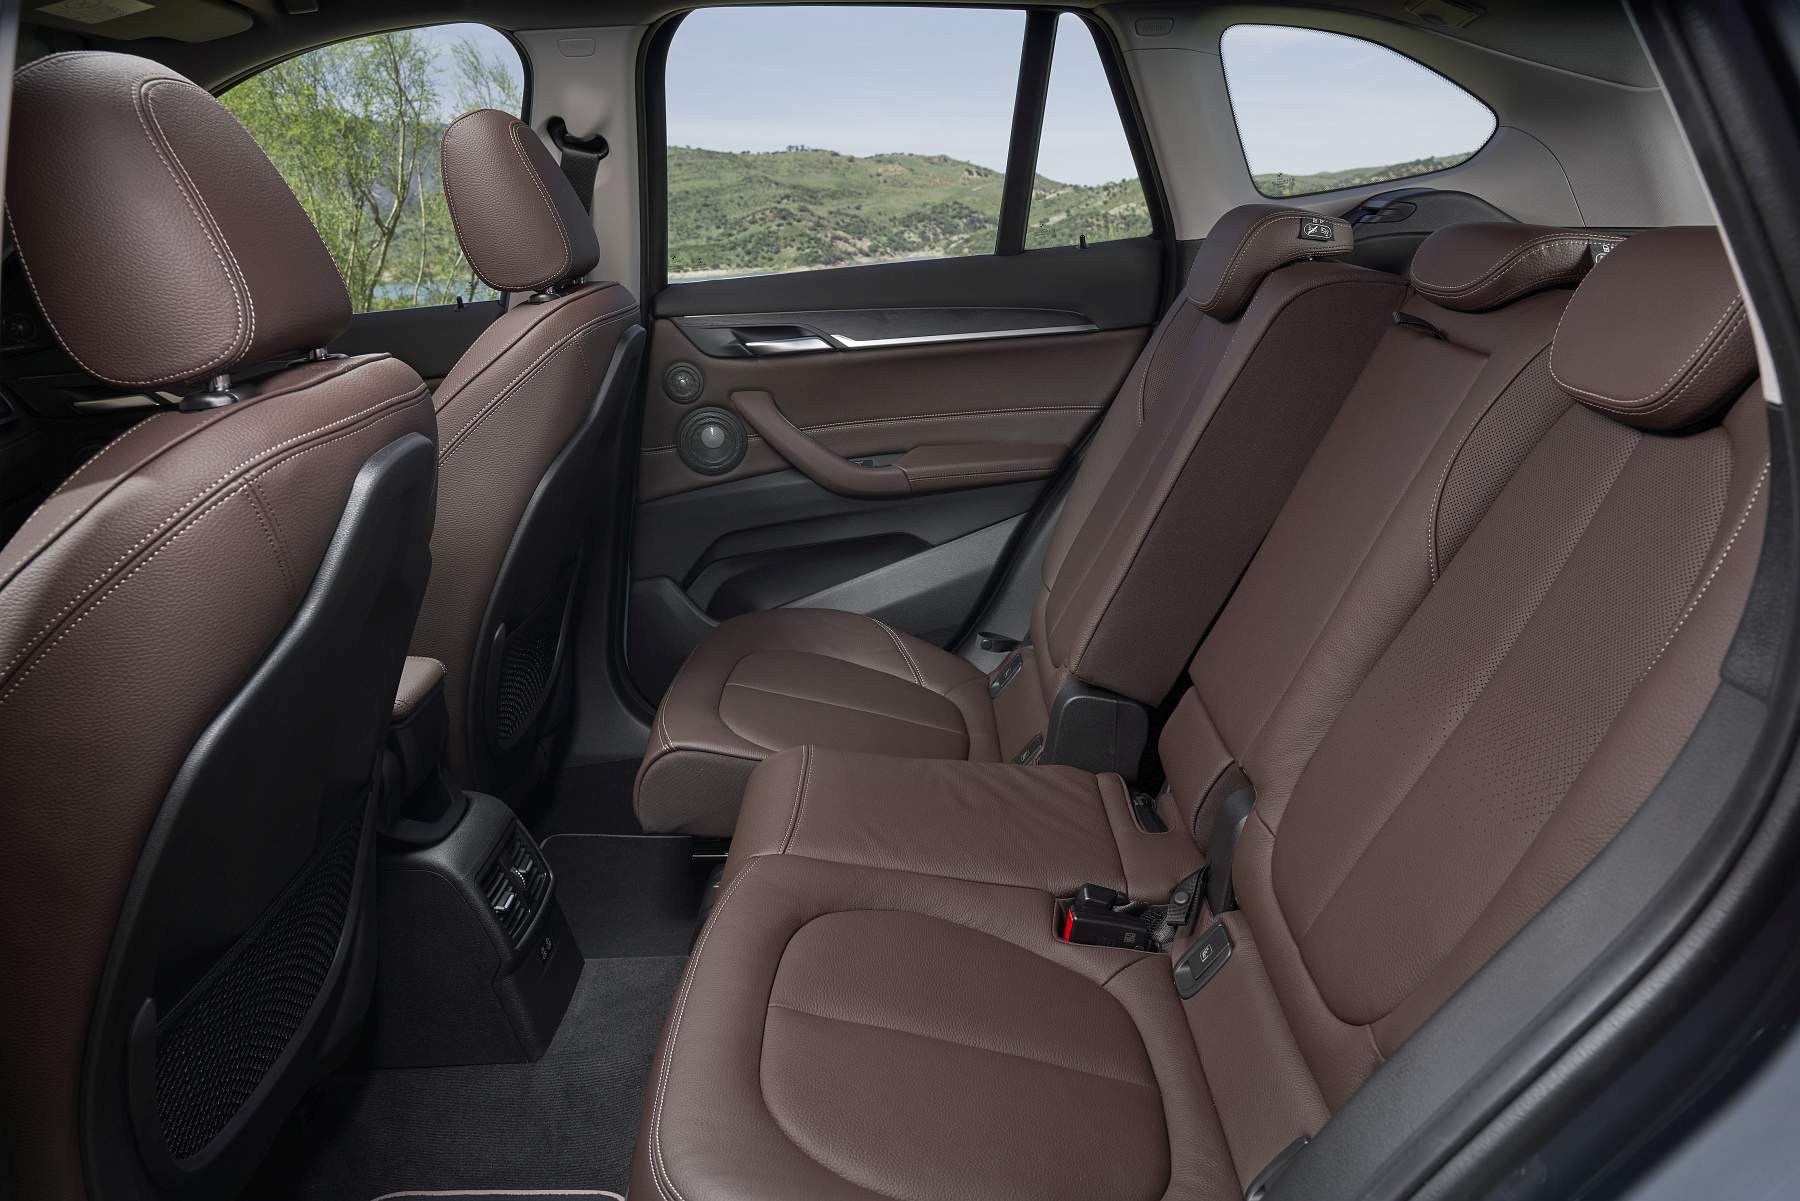 BMW X1 2019 interiores (5)